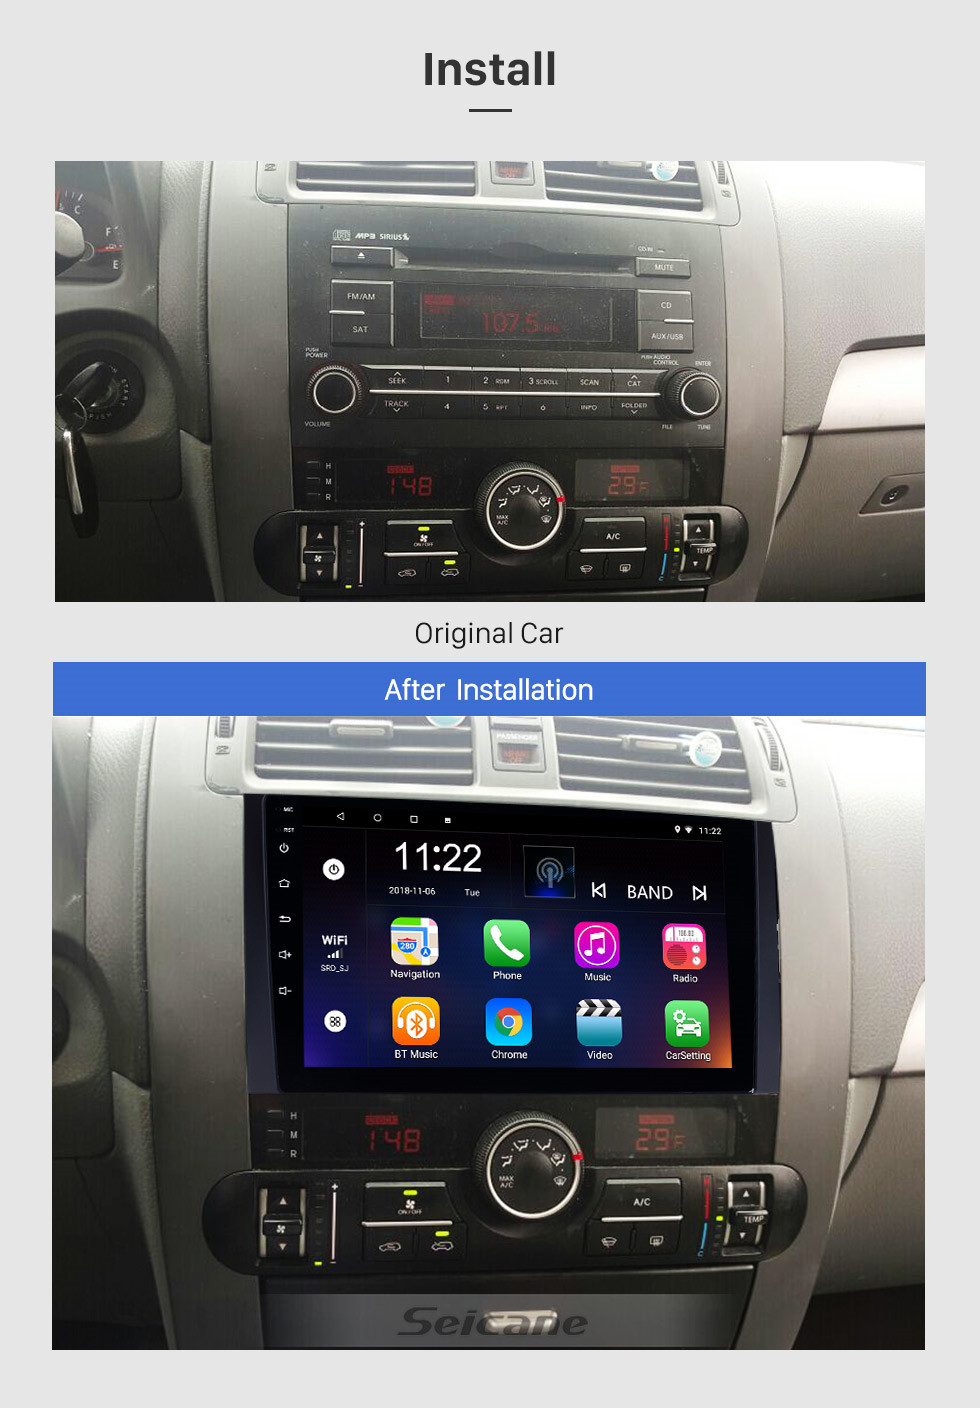 Seicane 9 pulgadas Android 10.0 Radio con pantalla táctil Bluetooth Sistema de navegación GPS para 2008-2016 KIA Borrego MOHAVE con TPMS DVR OBD II USB 3G WiFi Cámara trasera Control del volante HD 1080P Video AUX